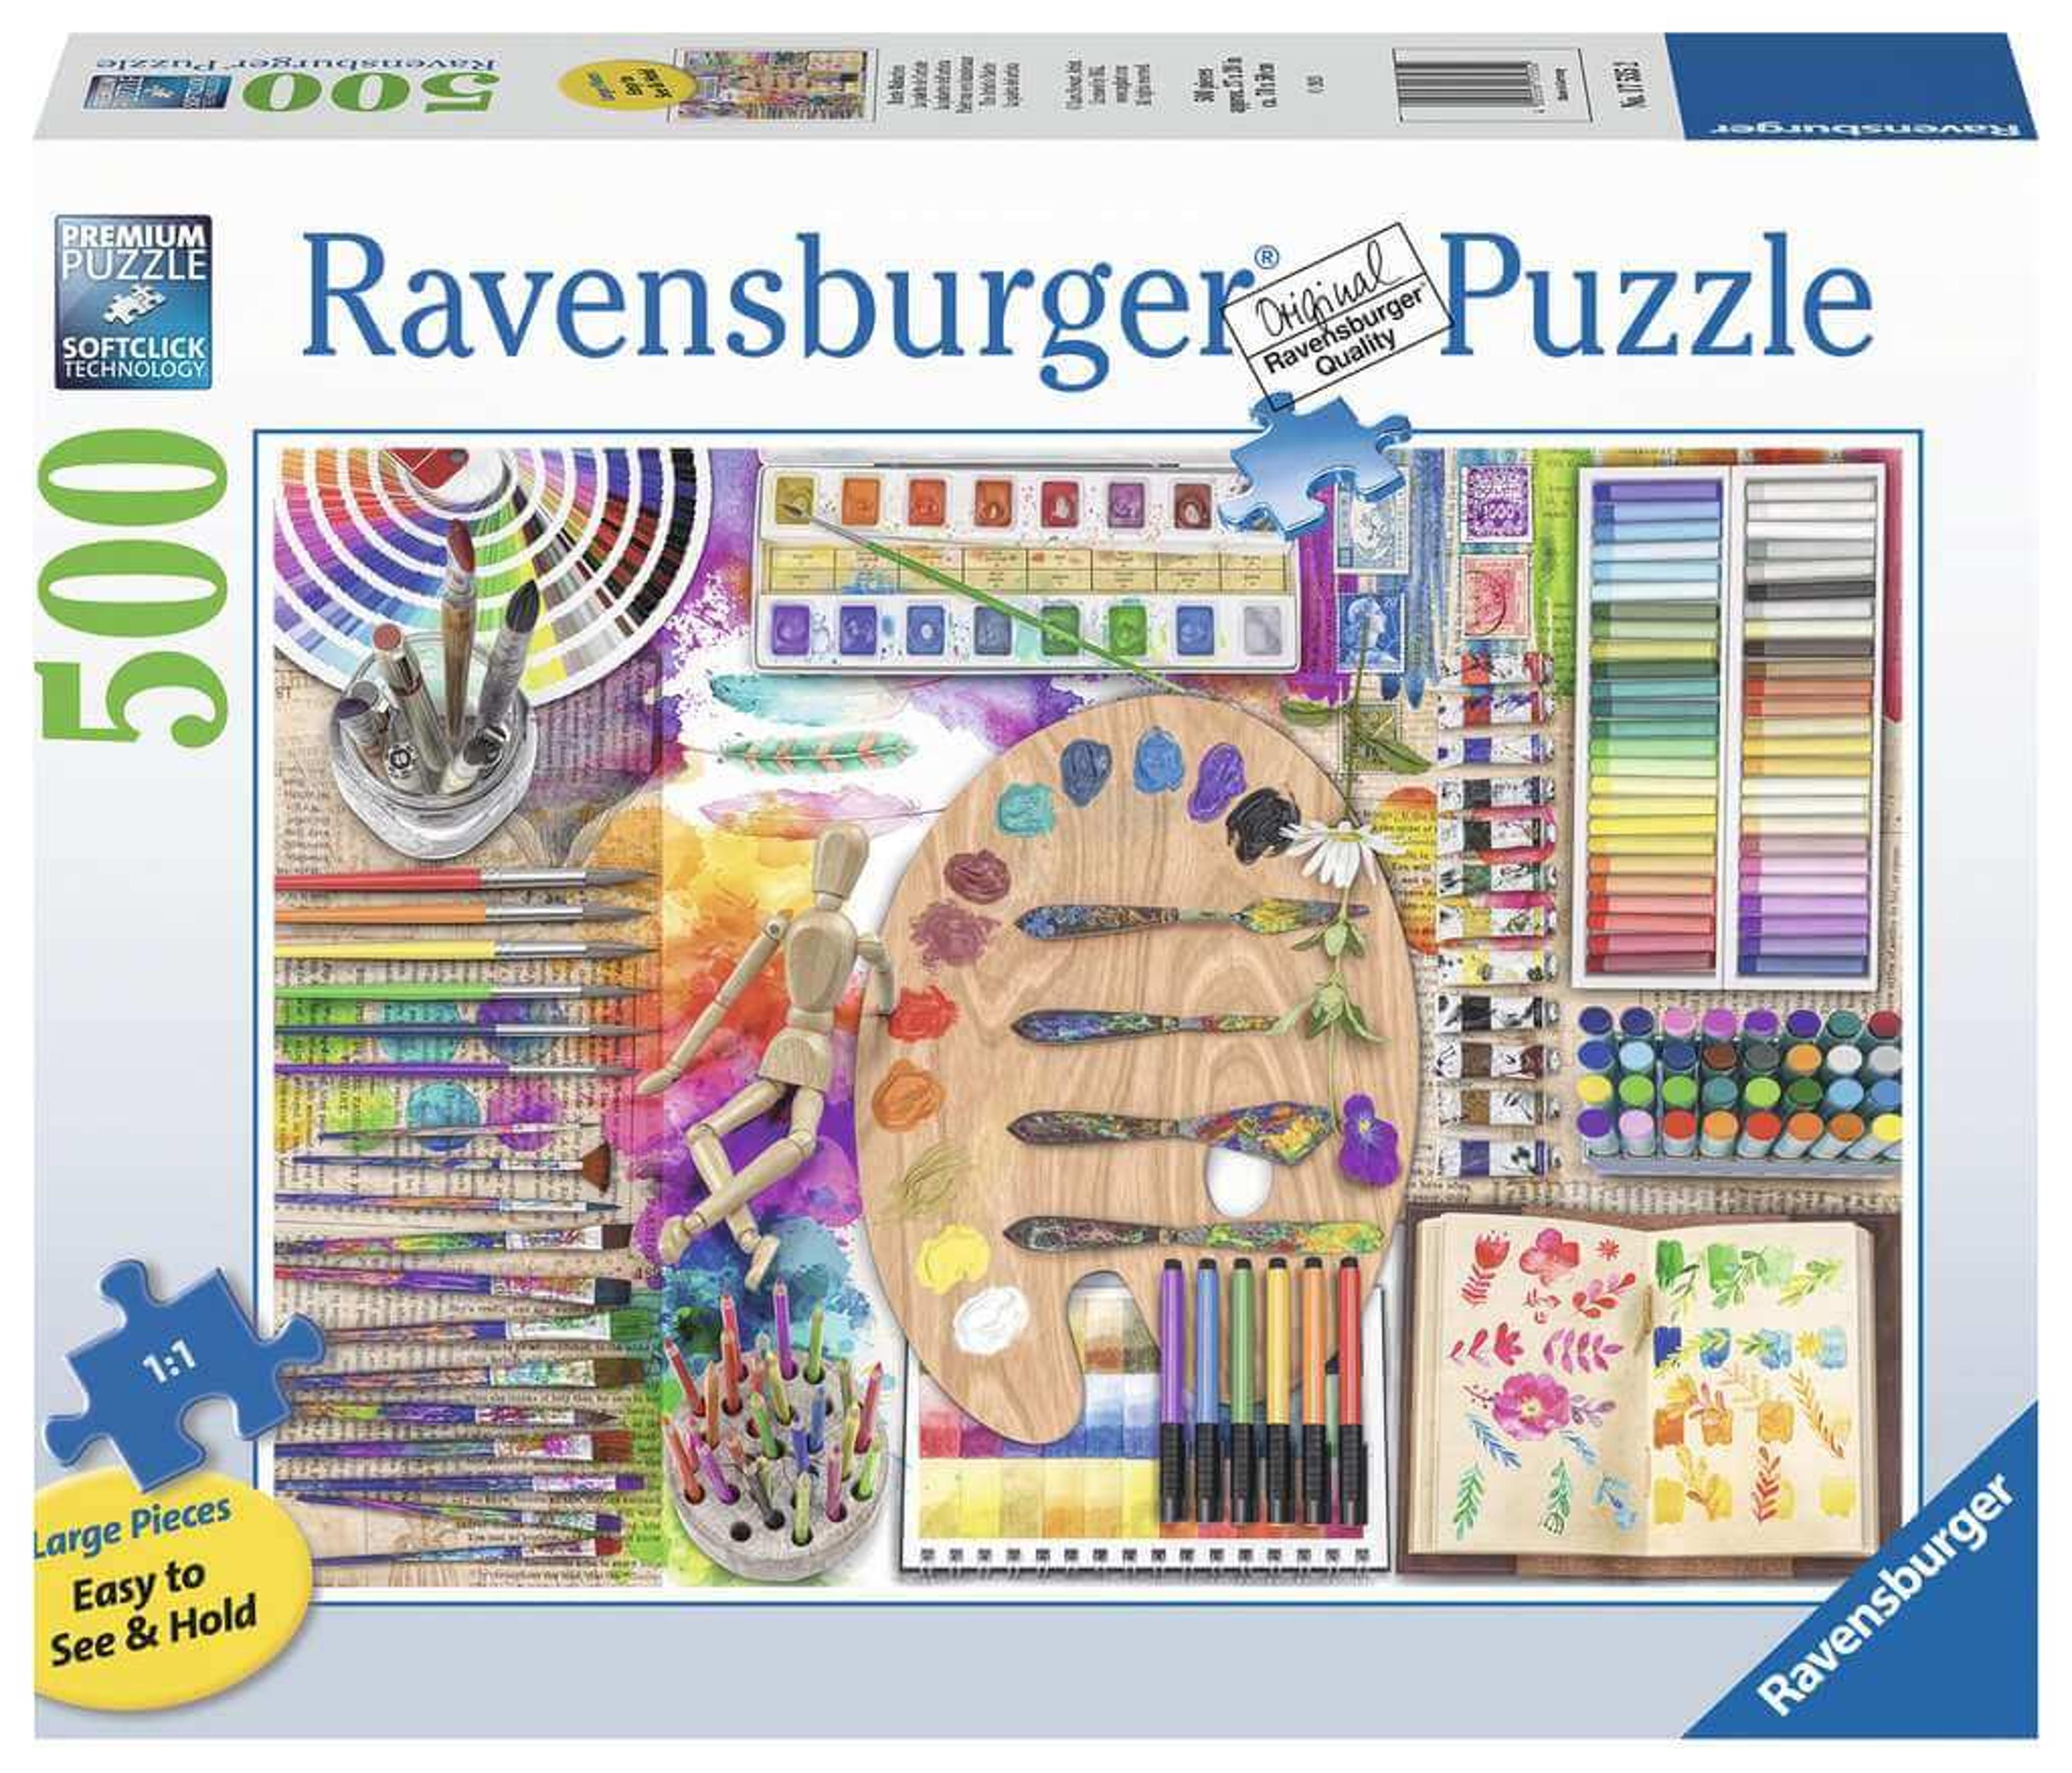 Ravensburger The Artists Palette 500pc Puzzle (Large Pieces Style)